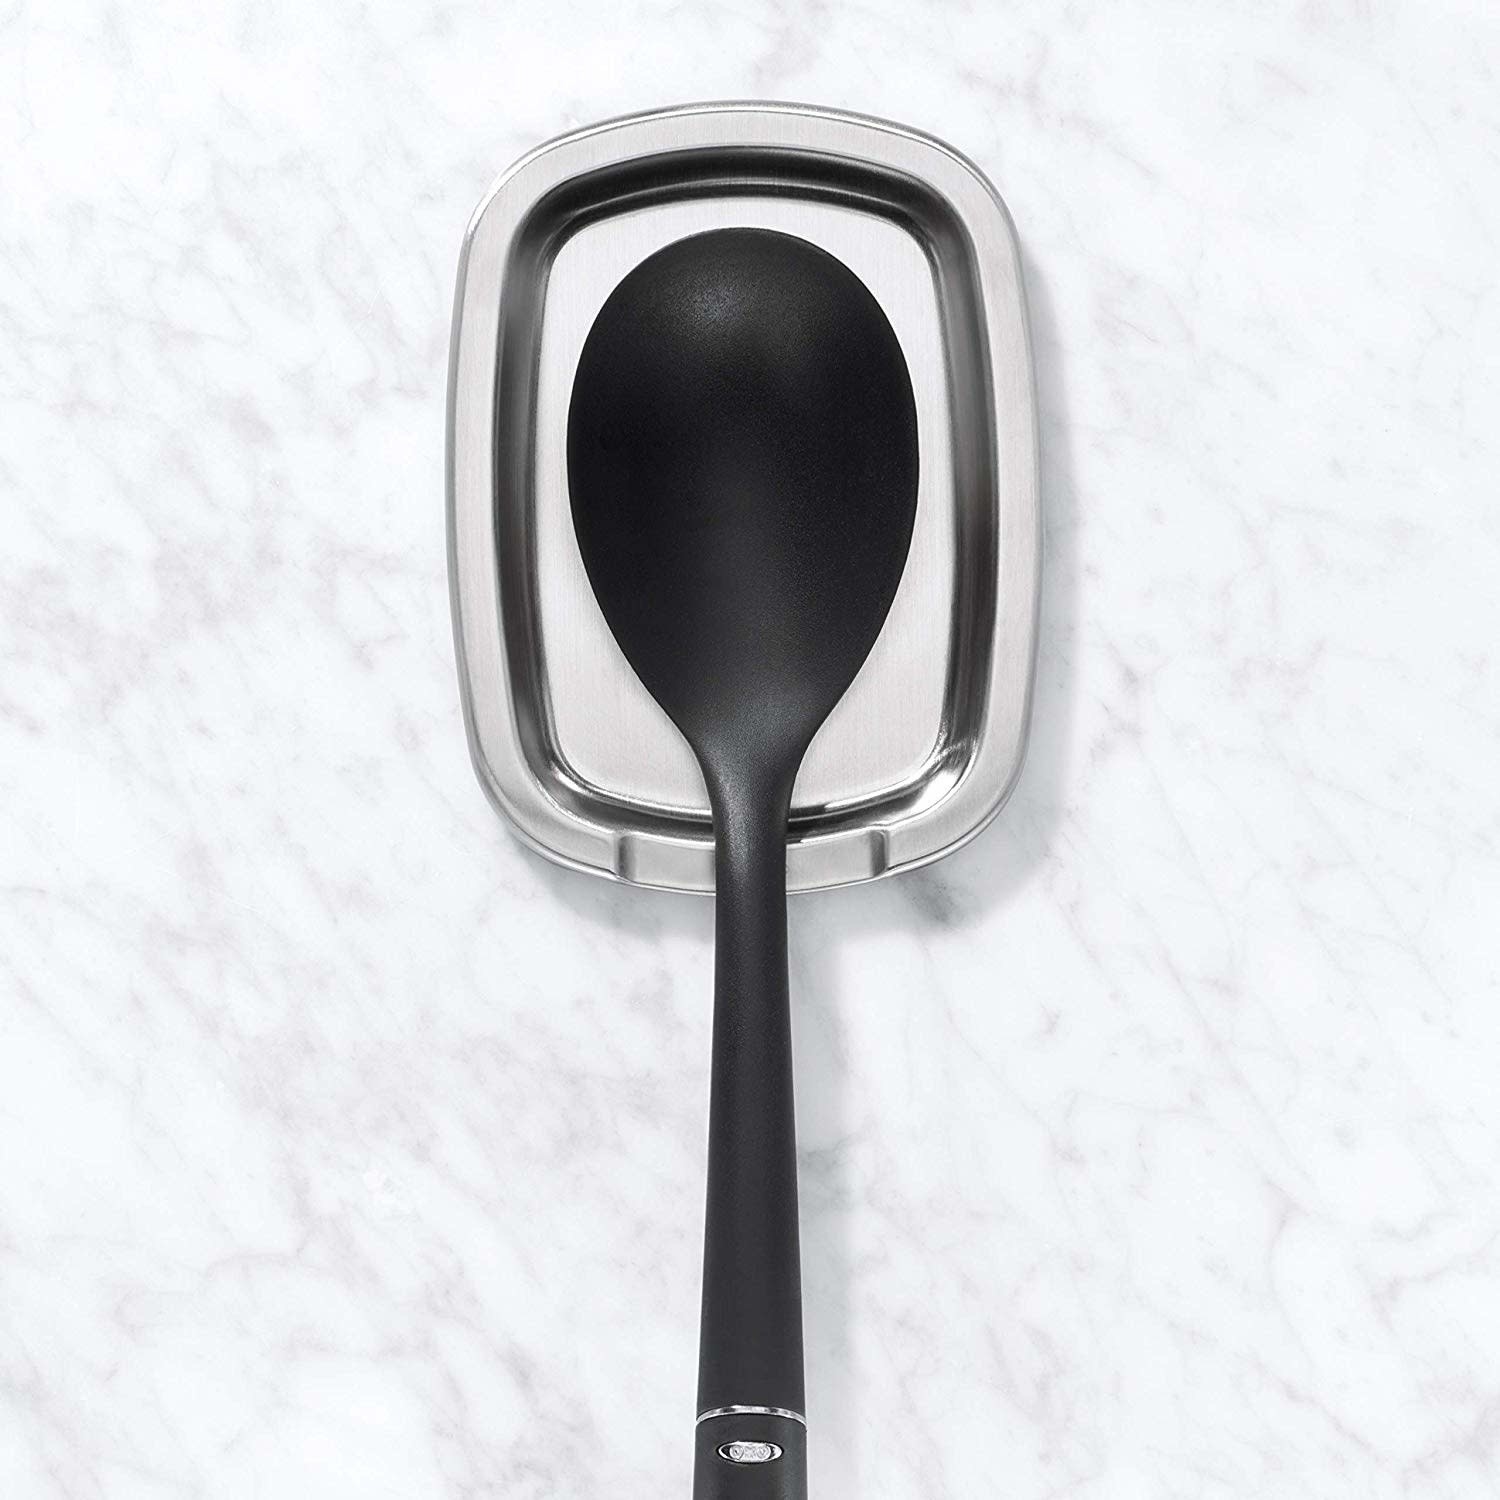 https://cdn.shoplightspeed.com/shops/633447/files/17805985/1500x4000x3/oxo-oxo-simple-stainless-steel-spoon-rest.jpg